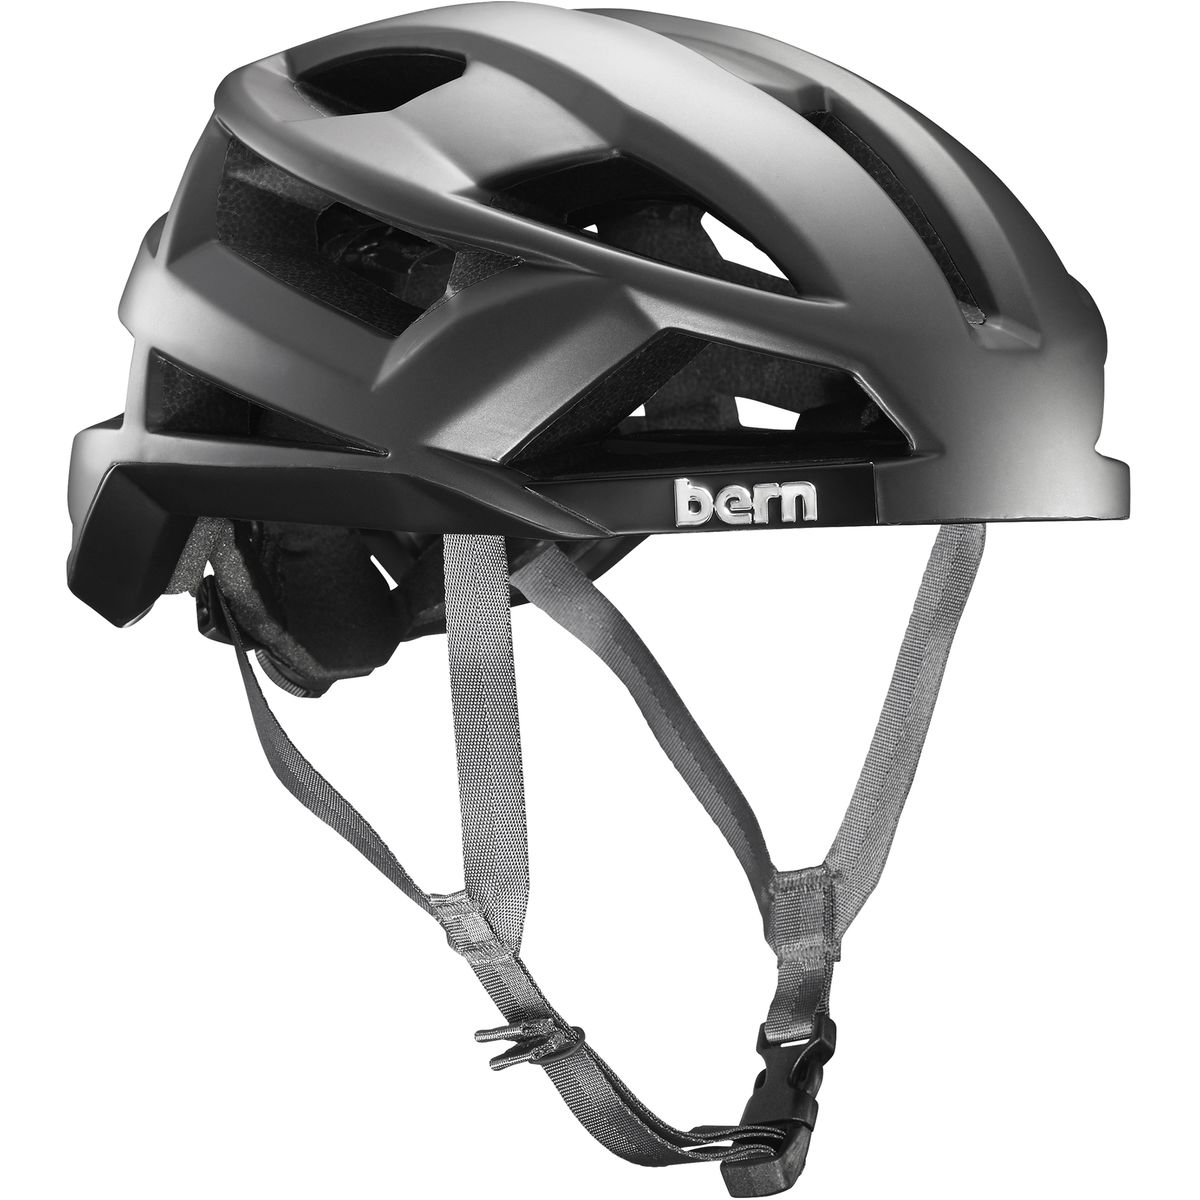 Bern FL-1 Helmet